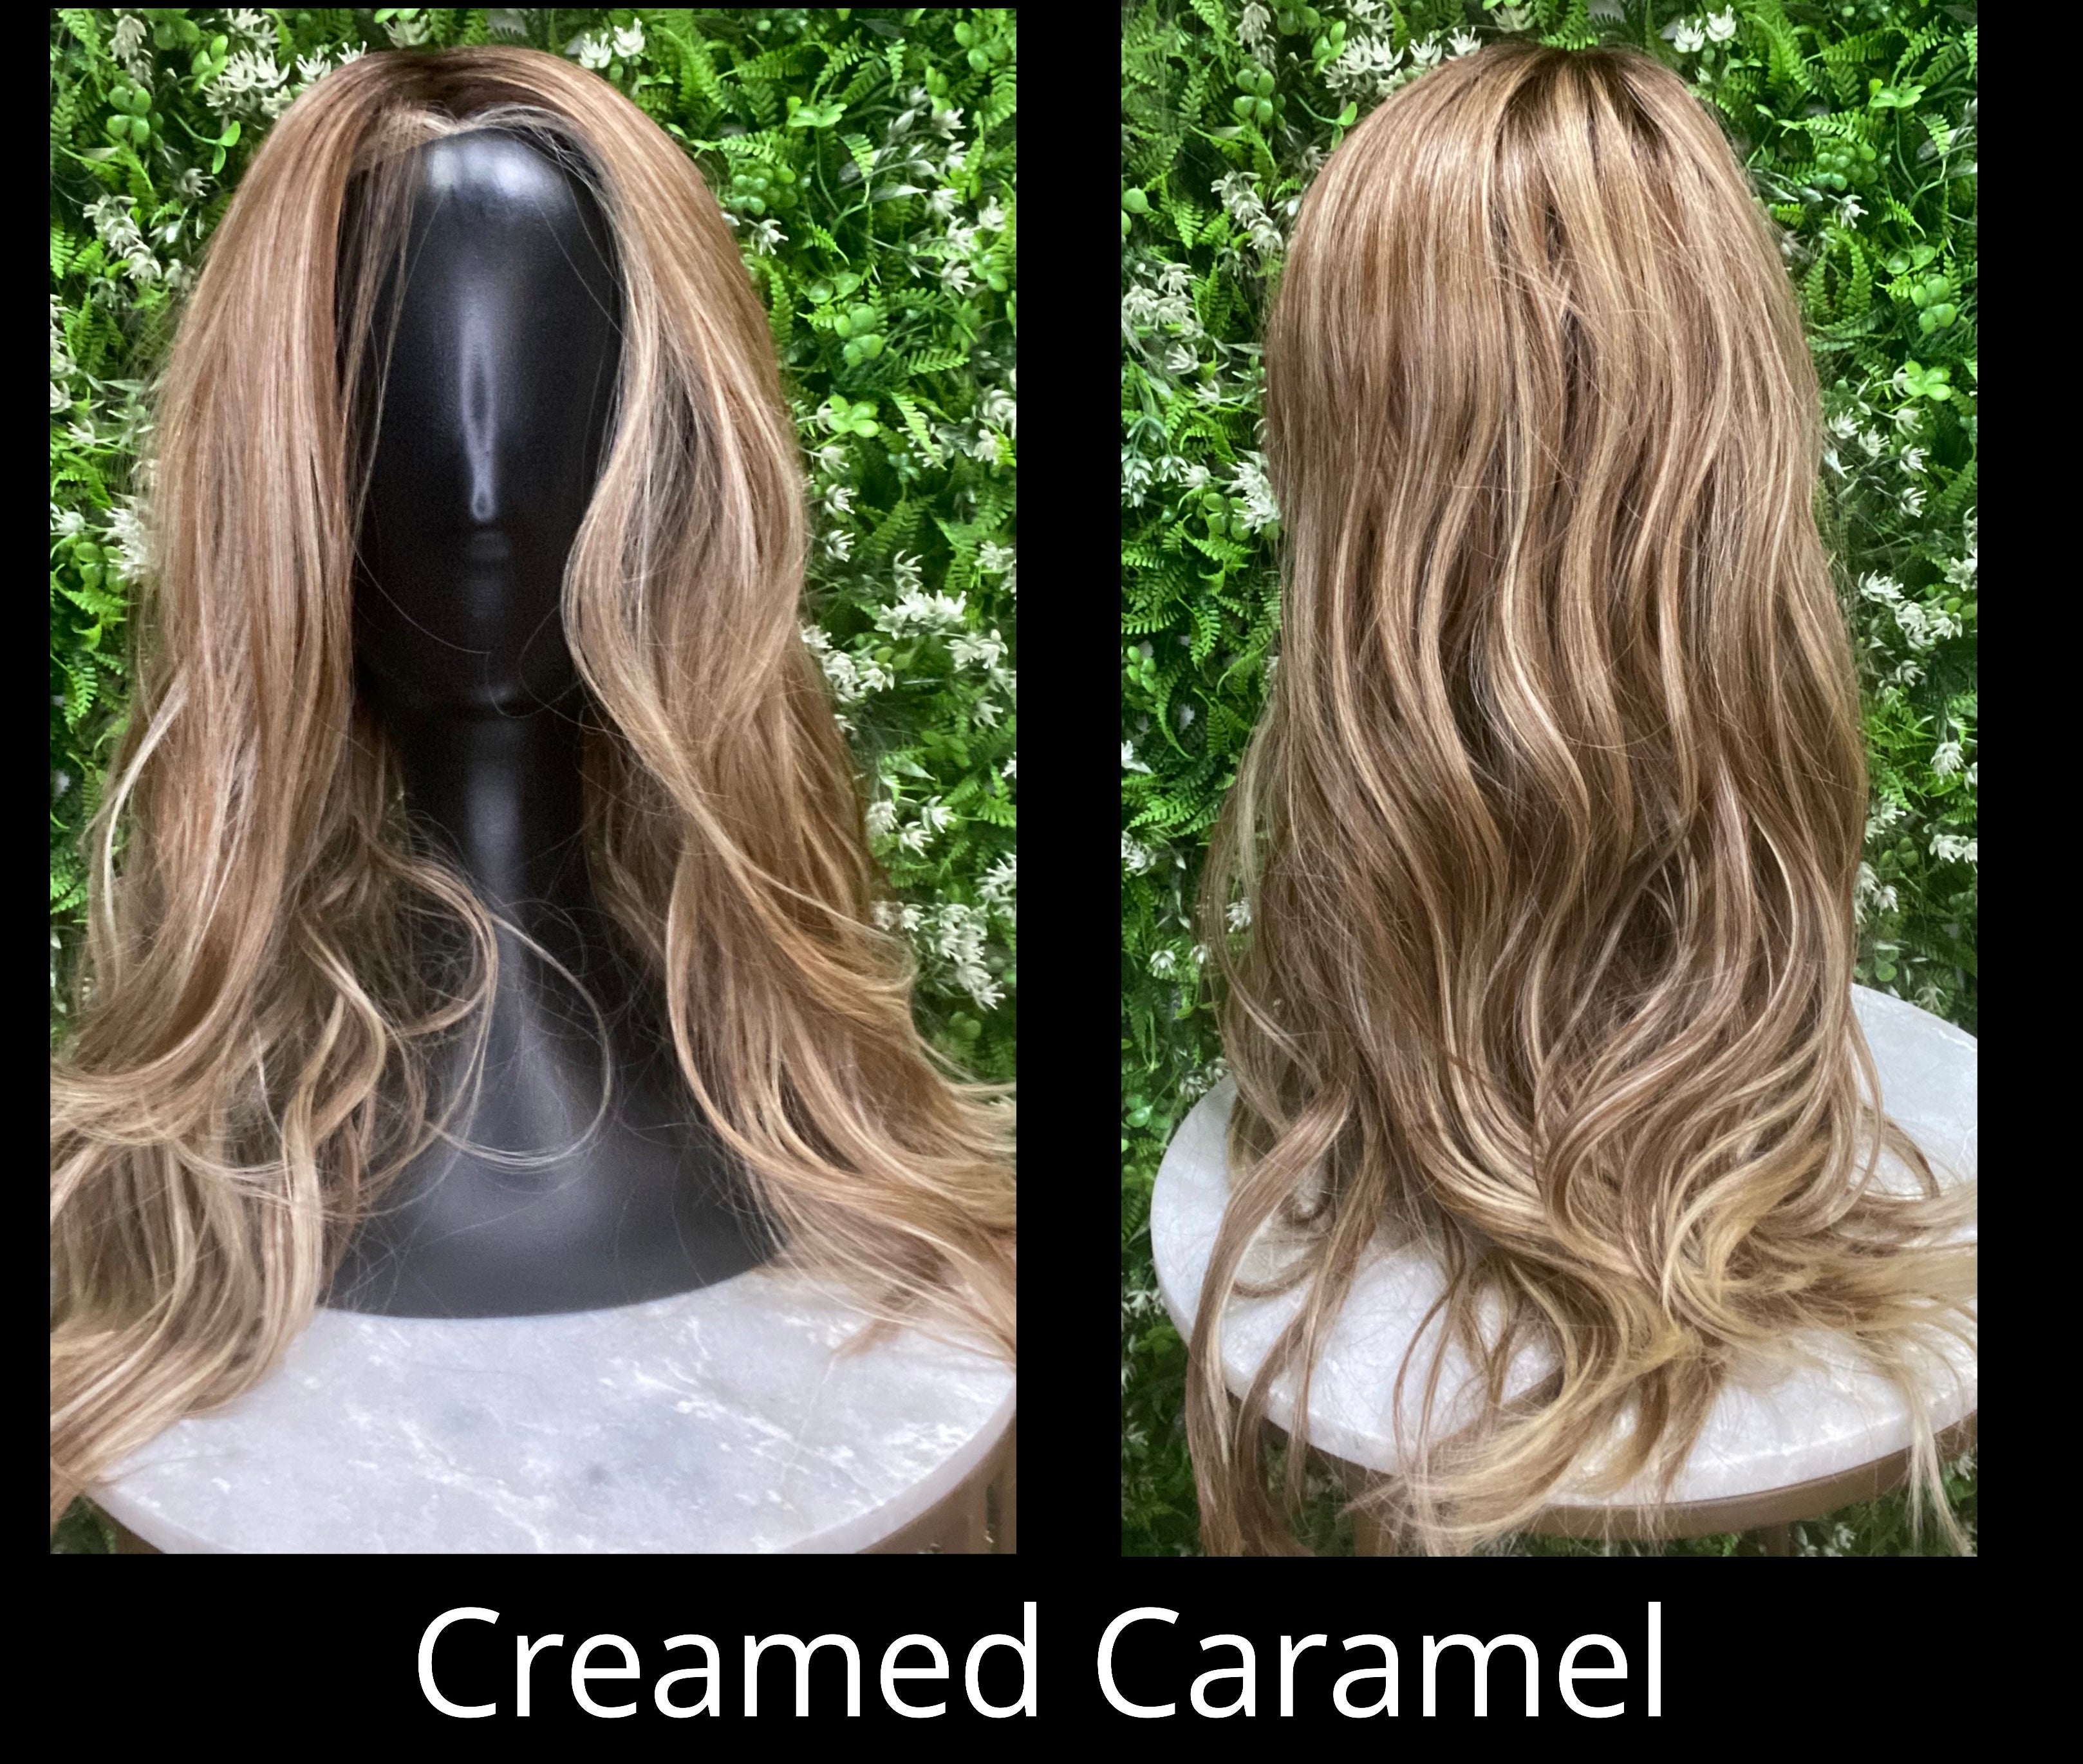 Creamed Caramel